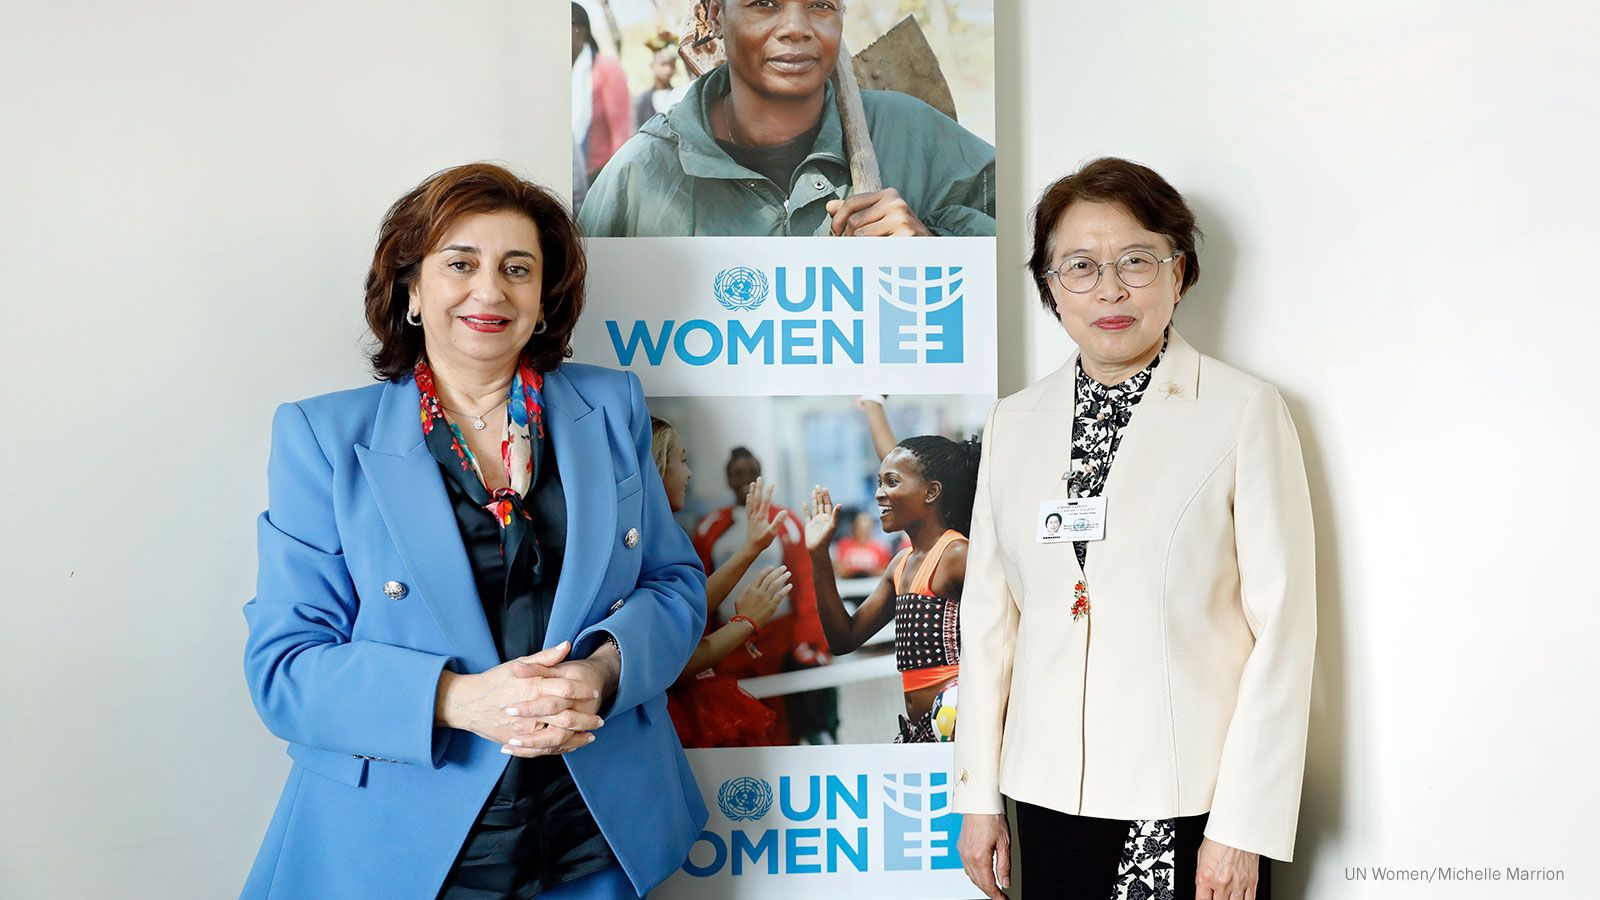 Huang Meets UN Under-Secretary-General, Executive Director of UN Women Bahous